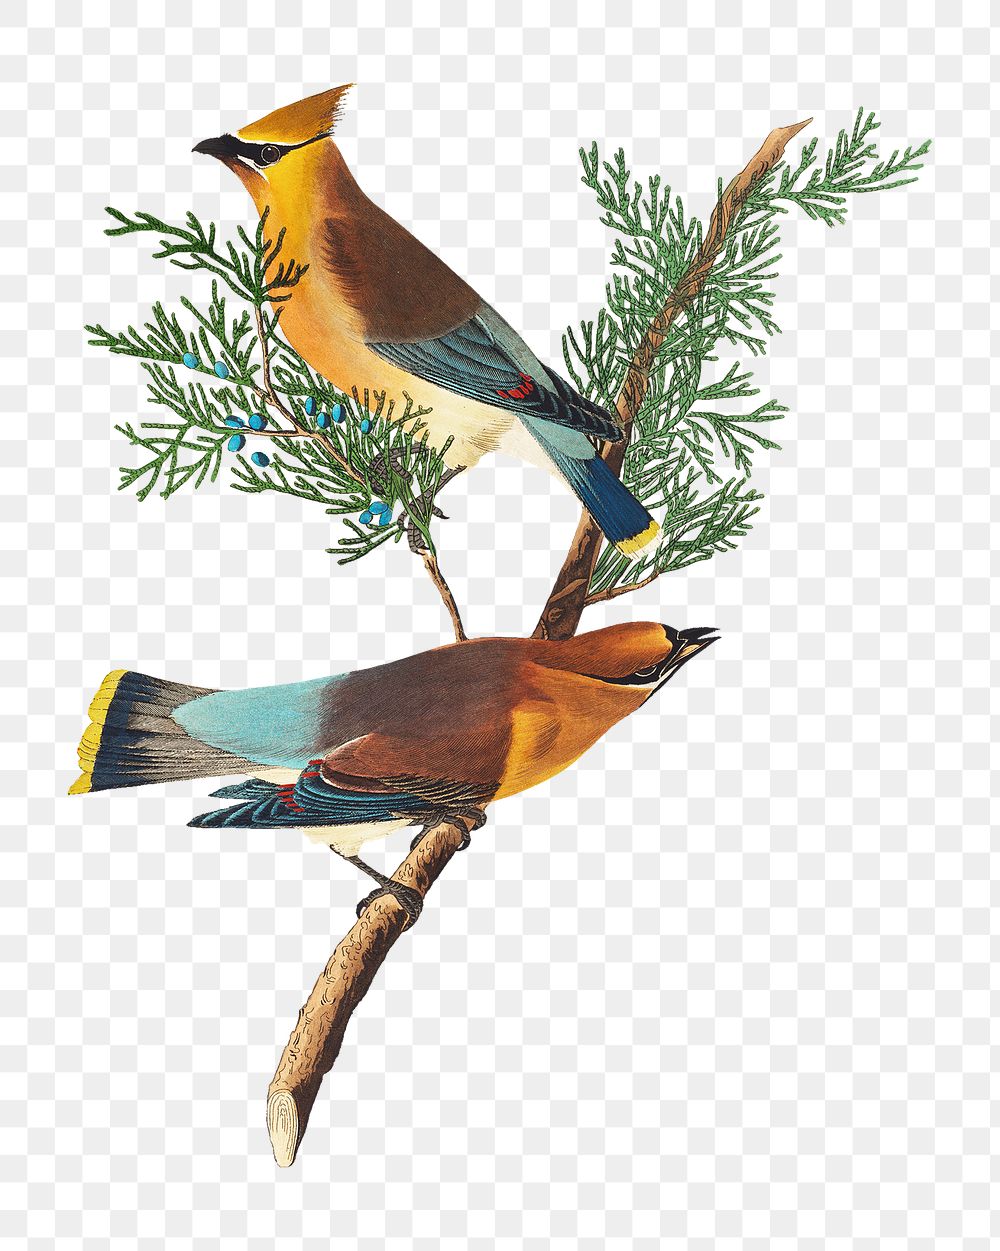 Cedar png bird sticker, transparent background